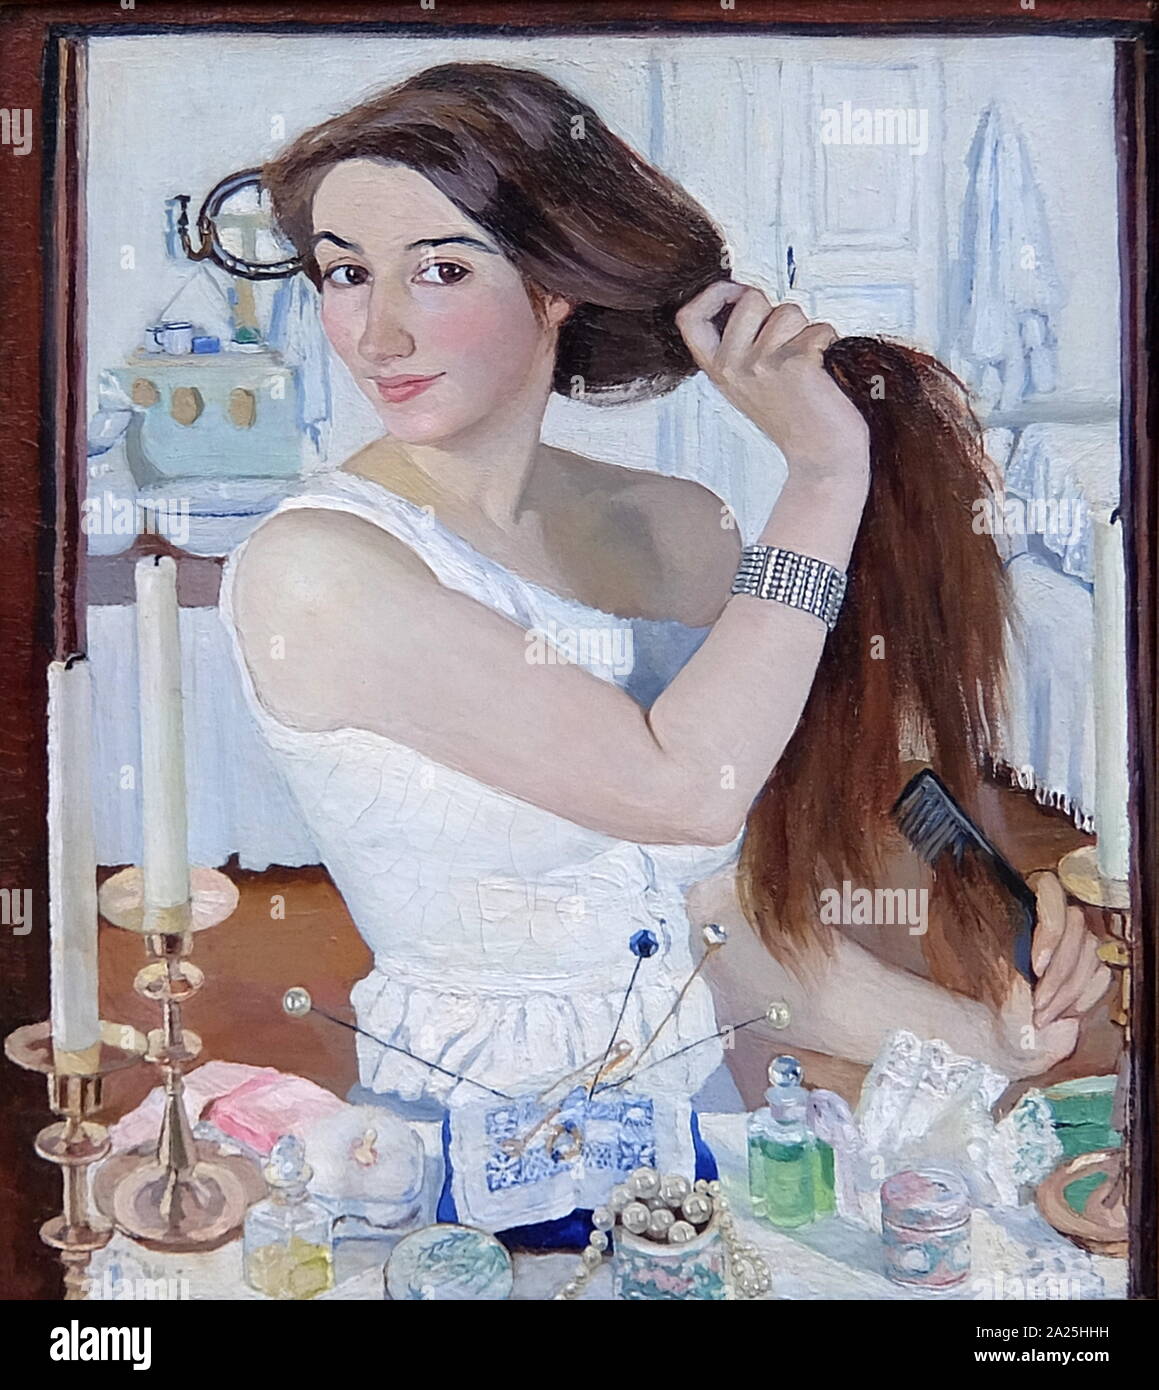 Self-portrait titled 'At Toilet' by Zinaida Serebriakova. Zinaida Yevgenyevna Serebriakova (1884-1967) a Russian painter. Stock Photo